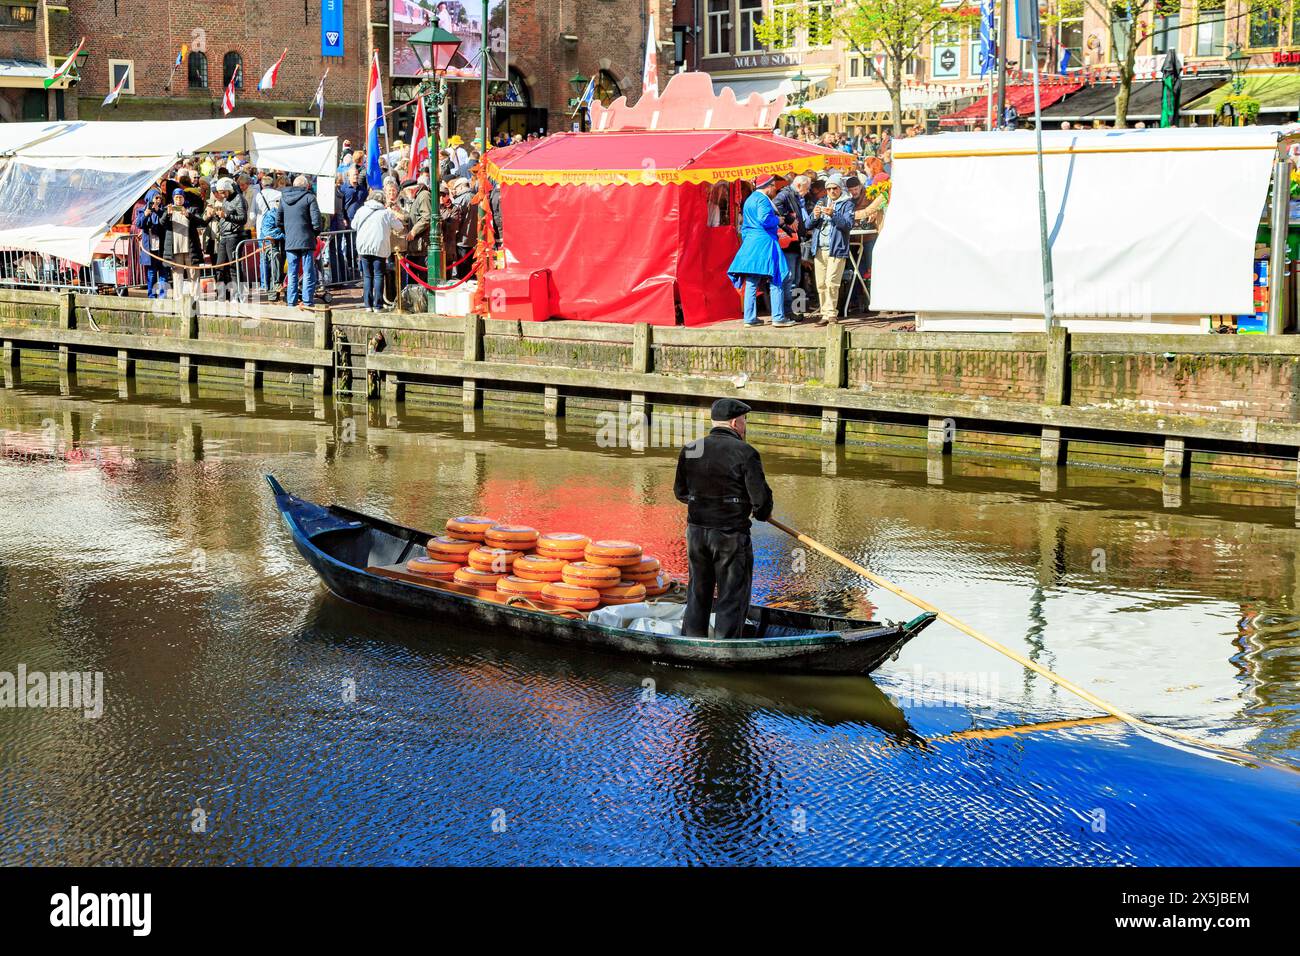 Paesi Bassi, Olanda settentrionale, Alkmaar. La tradizionale cittadina olandese con canale e il mercato del formaggio presso il Waagplein. Formaggio in barca a remi a mano. (Editoria Foto Stock